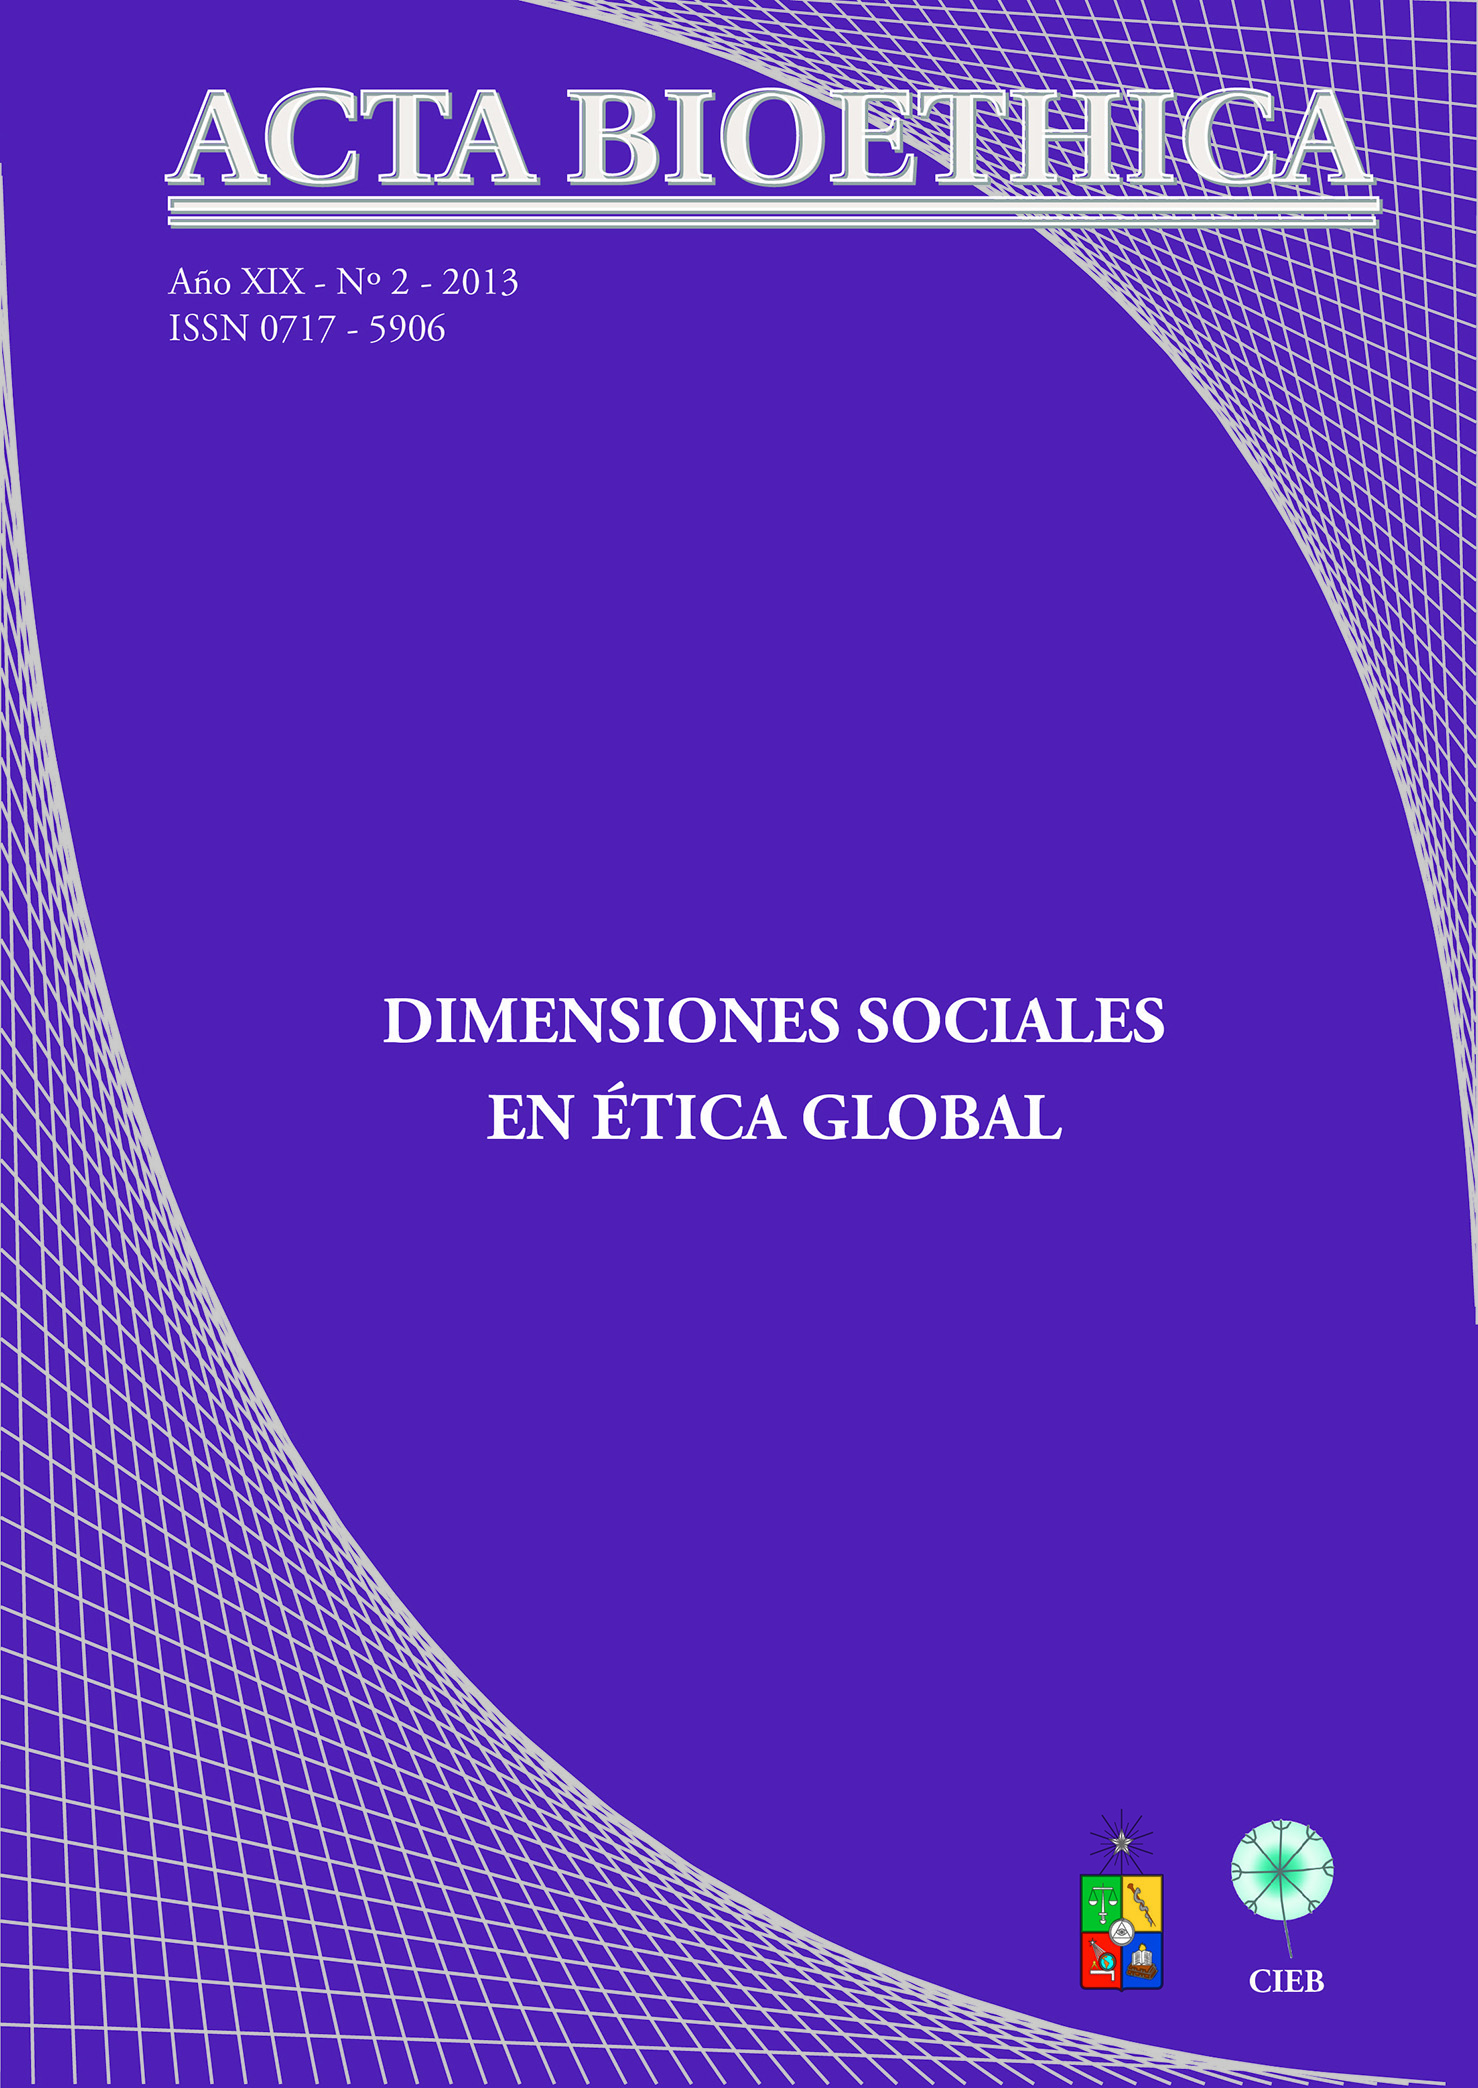 											View Vol. 19 No. 2 (2013): Dimensiones Sociales en Ética Global
										